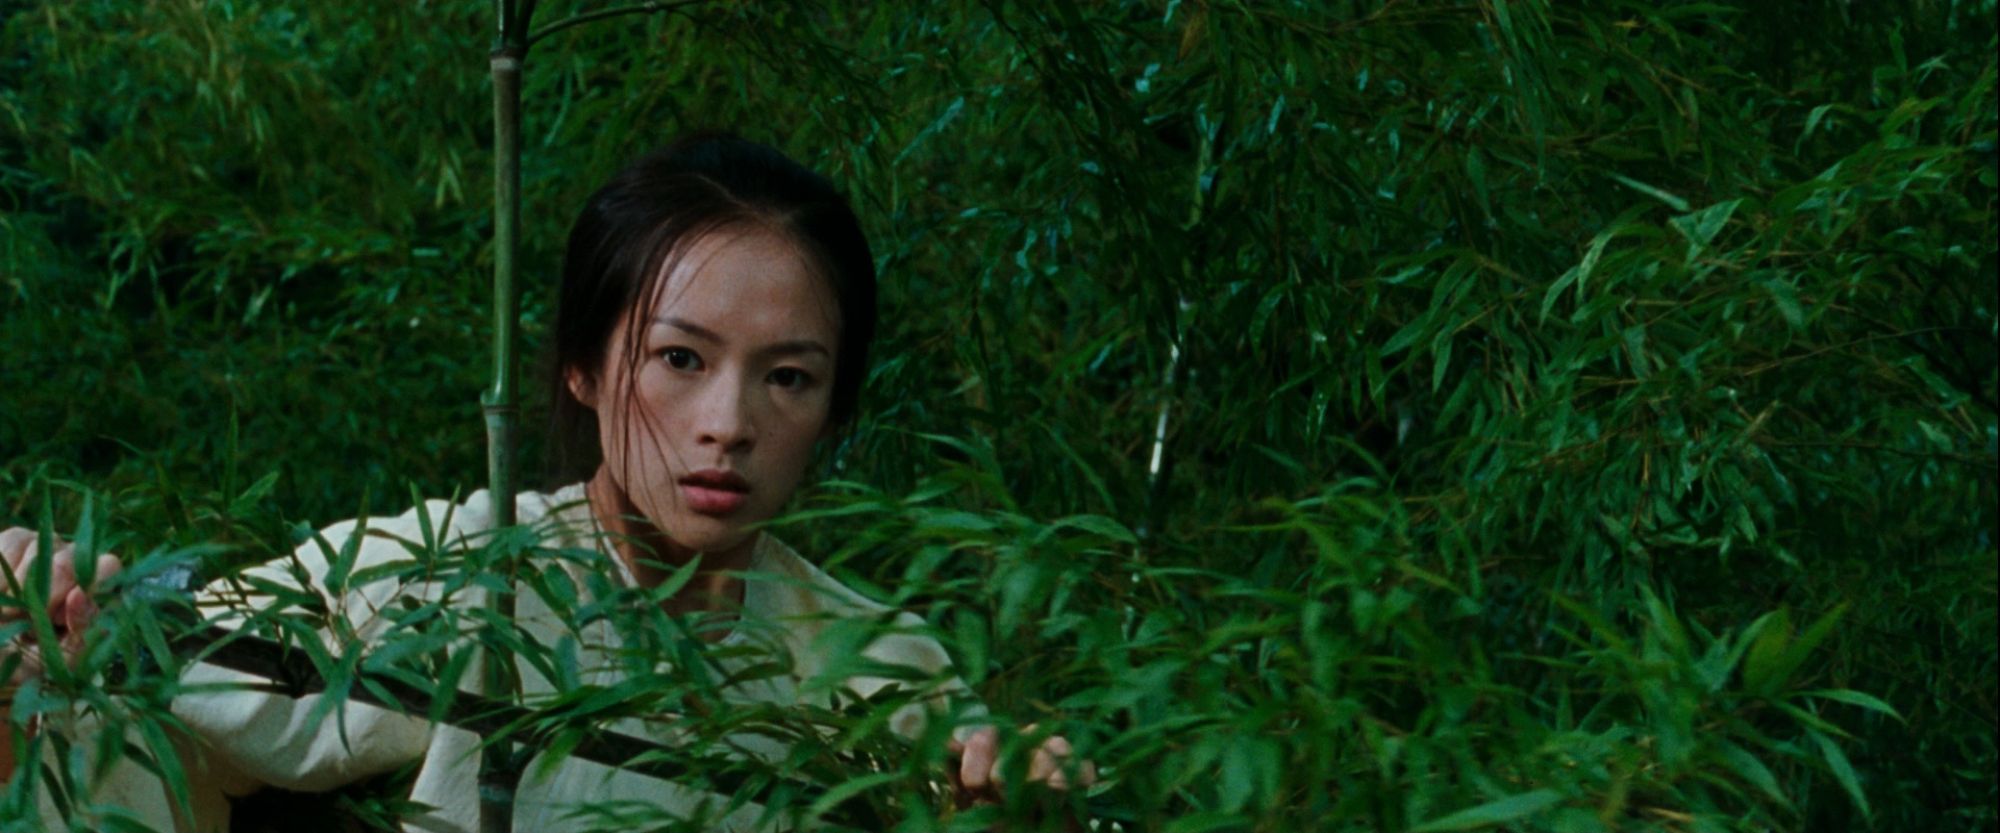 'Crouching Tiger, Hidden Dragon' Ziyi Zhang as Jen hiding behind greenery